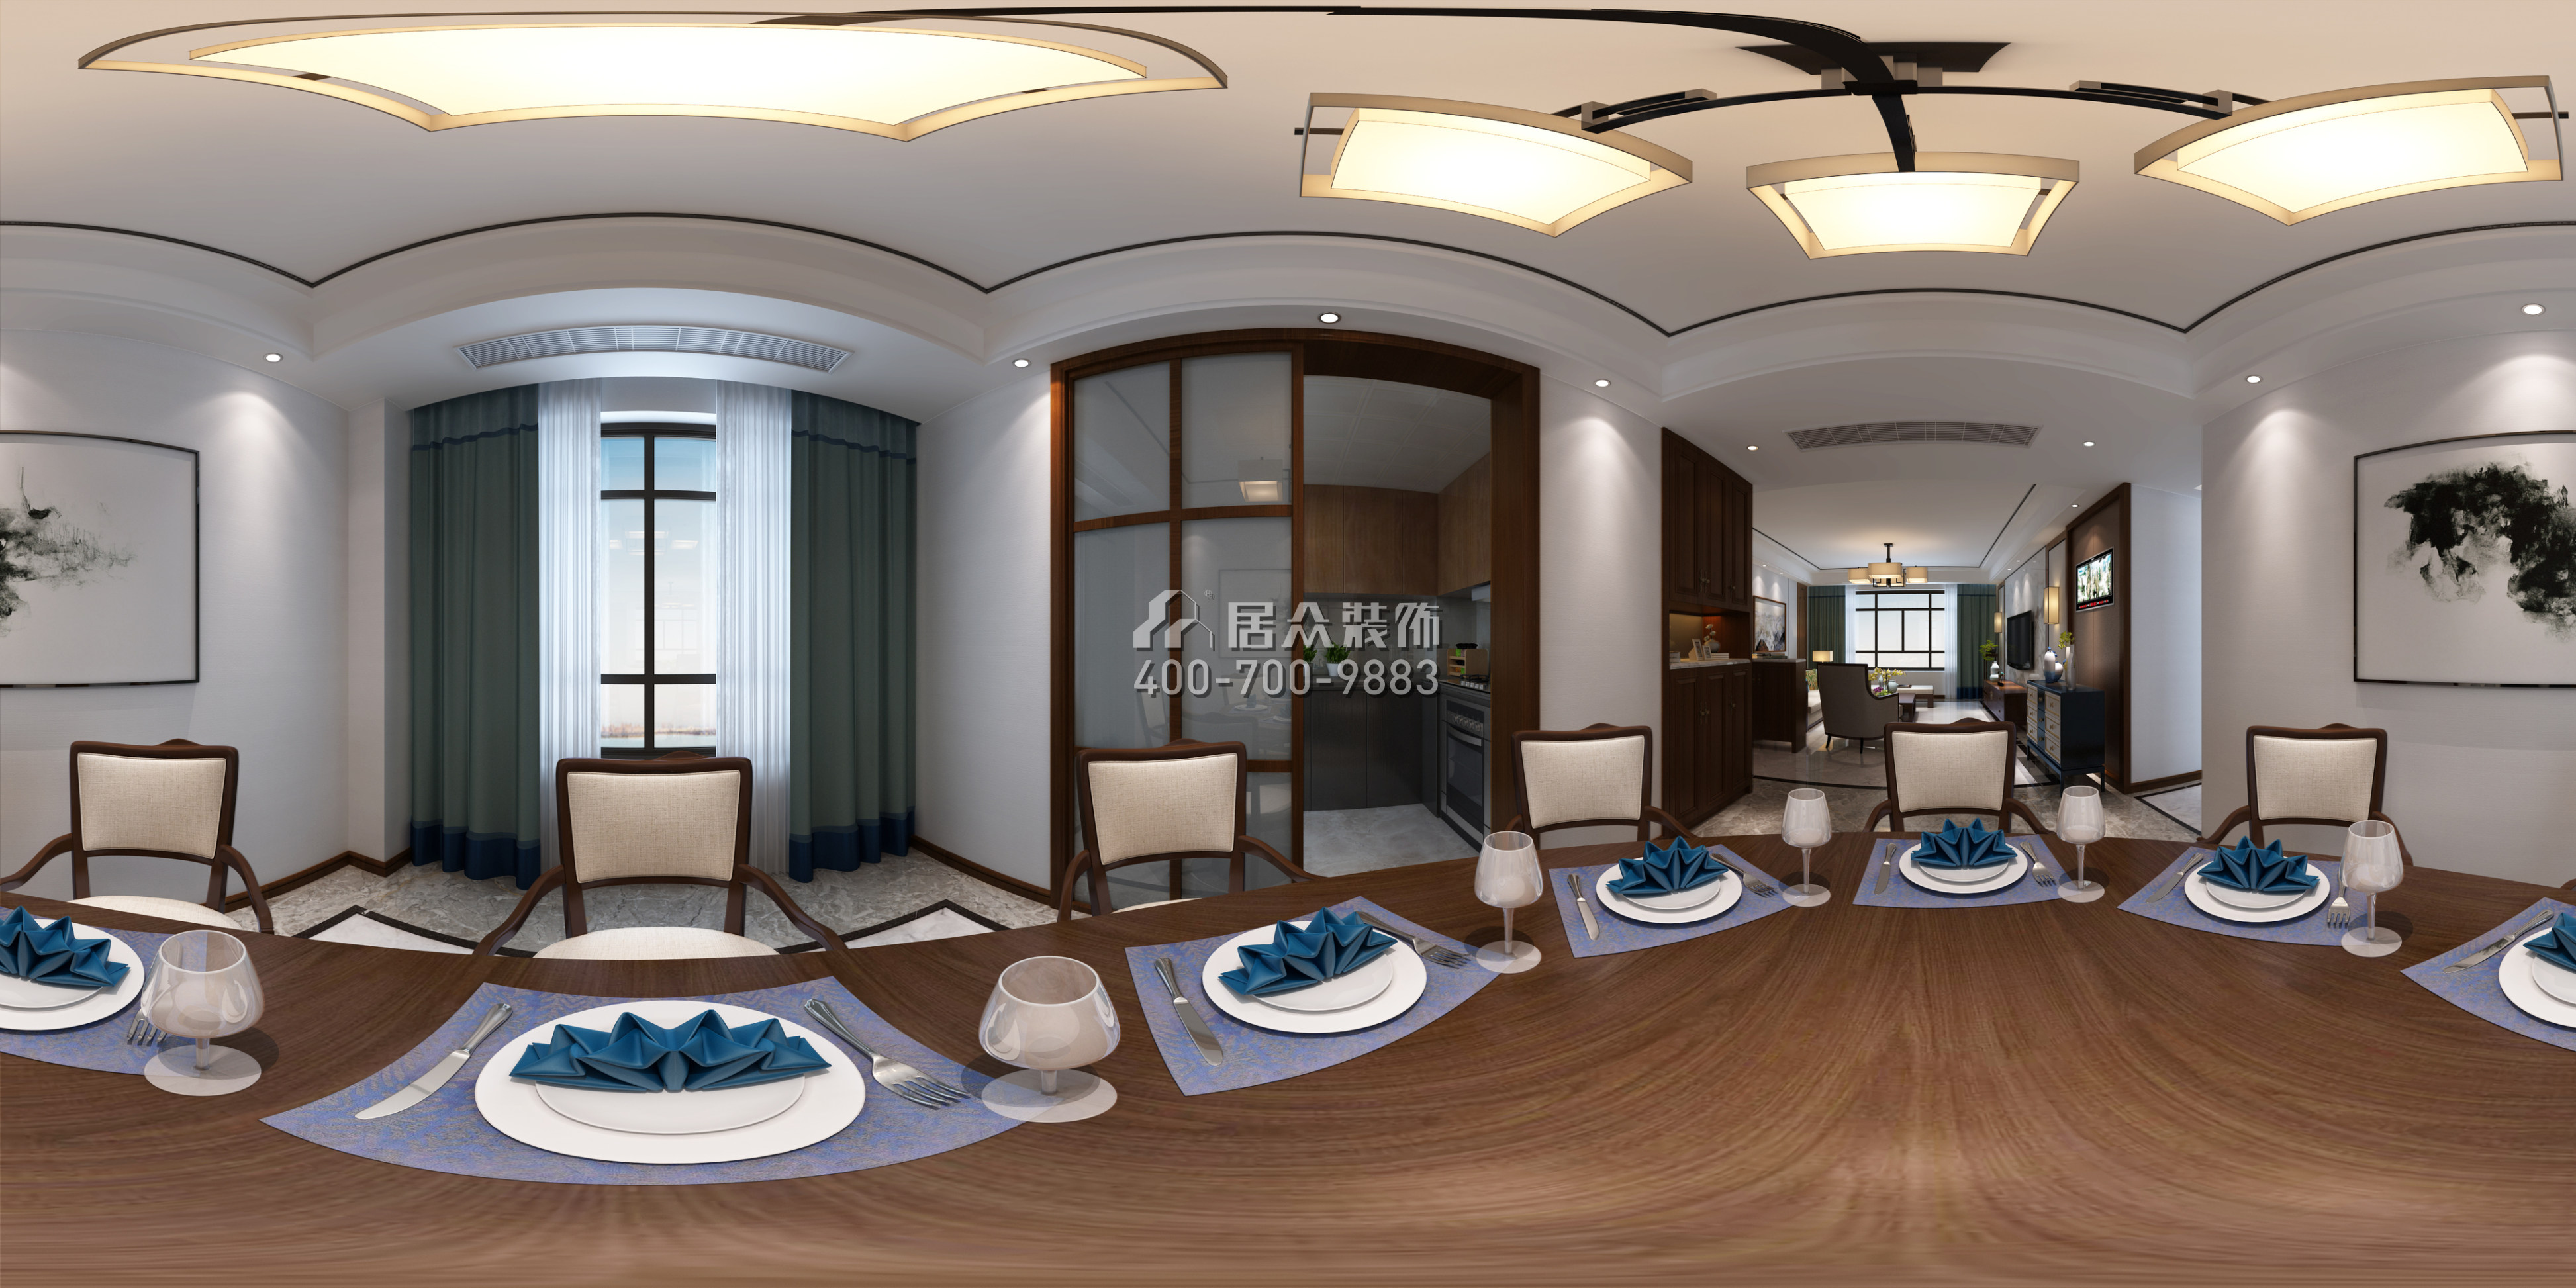 德景園150平方米中式風格平層戶型客廳裝修效果圖